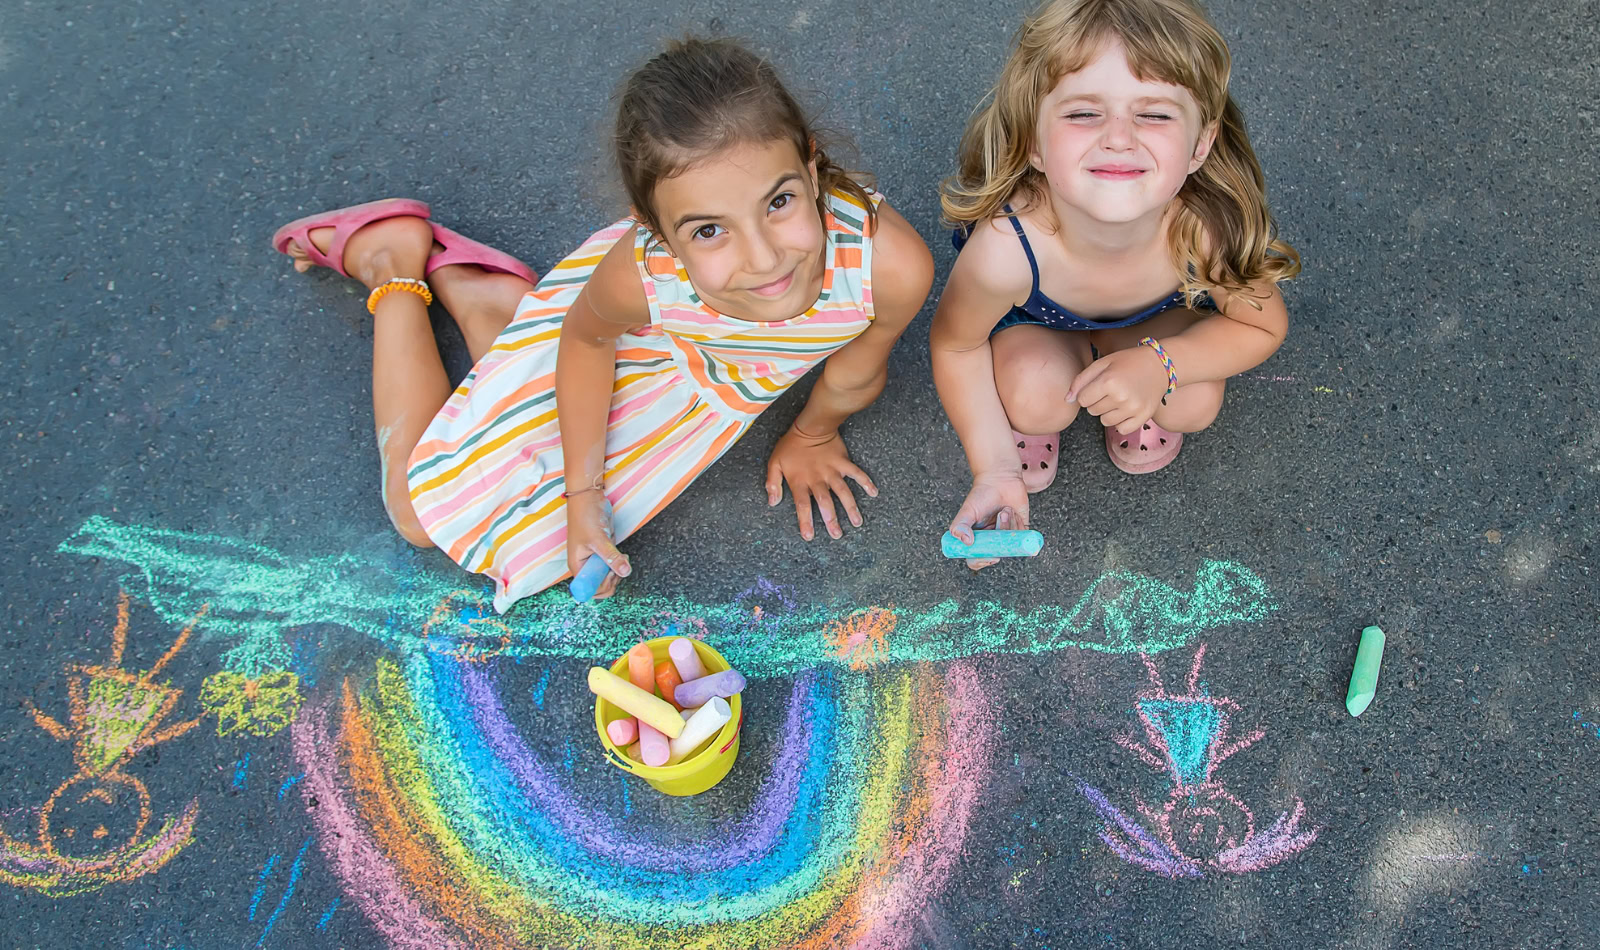 girls making chalk art on pavement